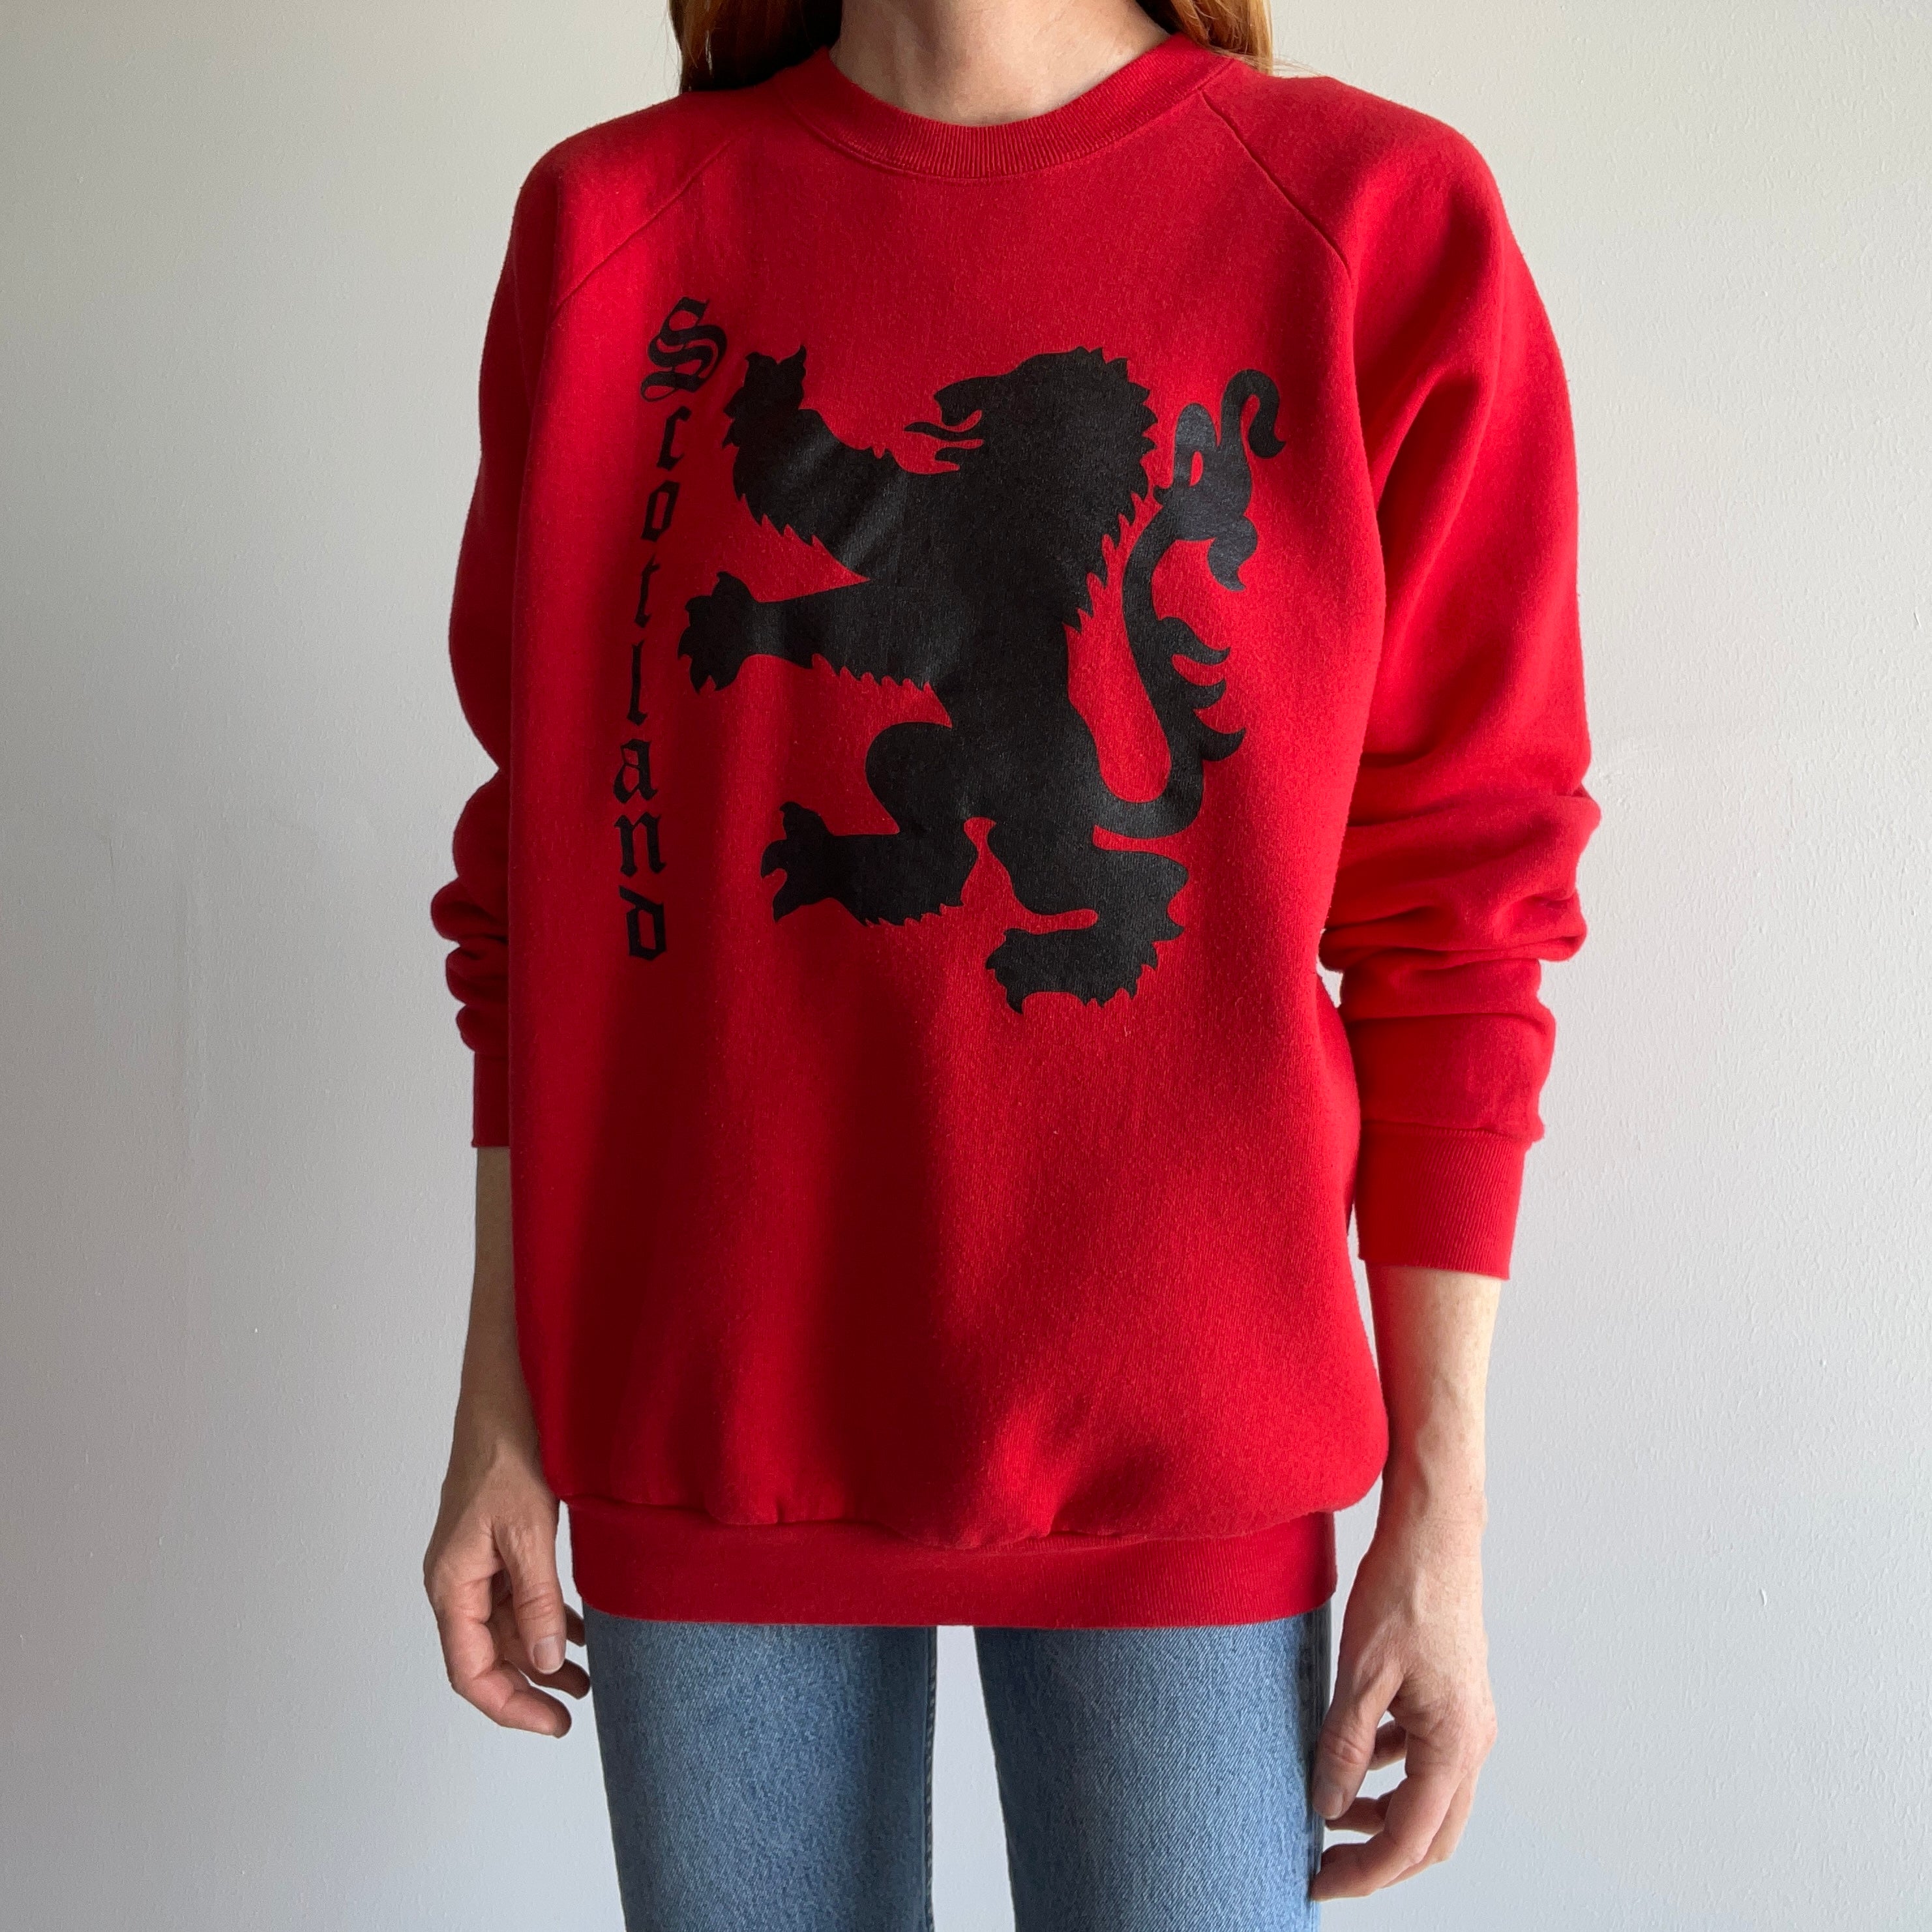 1980s Scotland Sweatshirt by FOTL